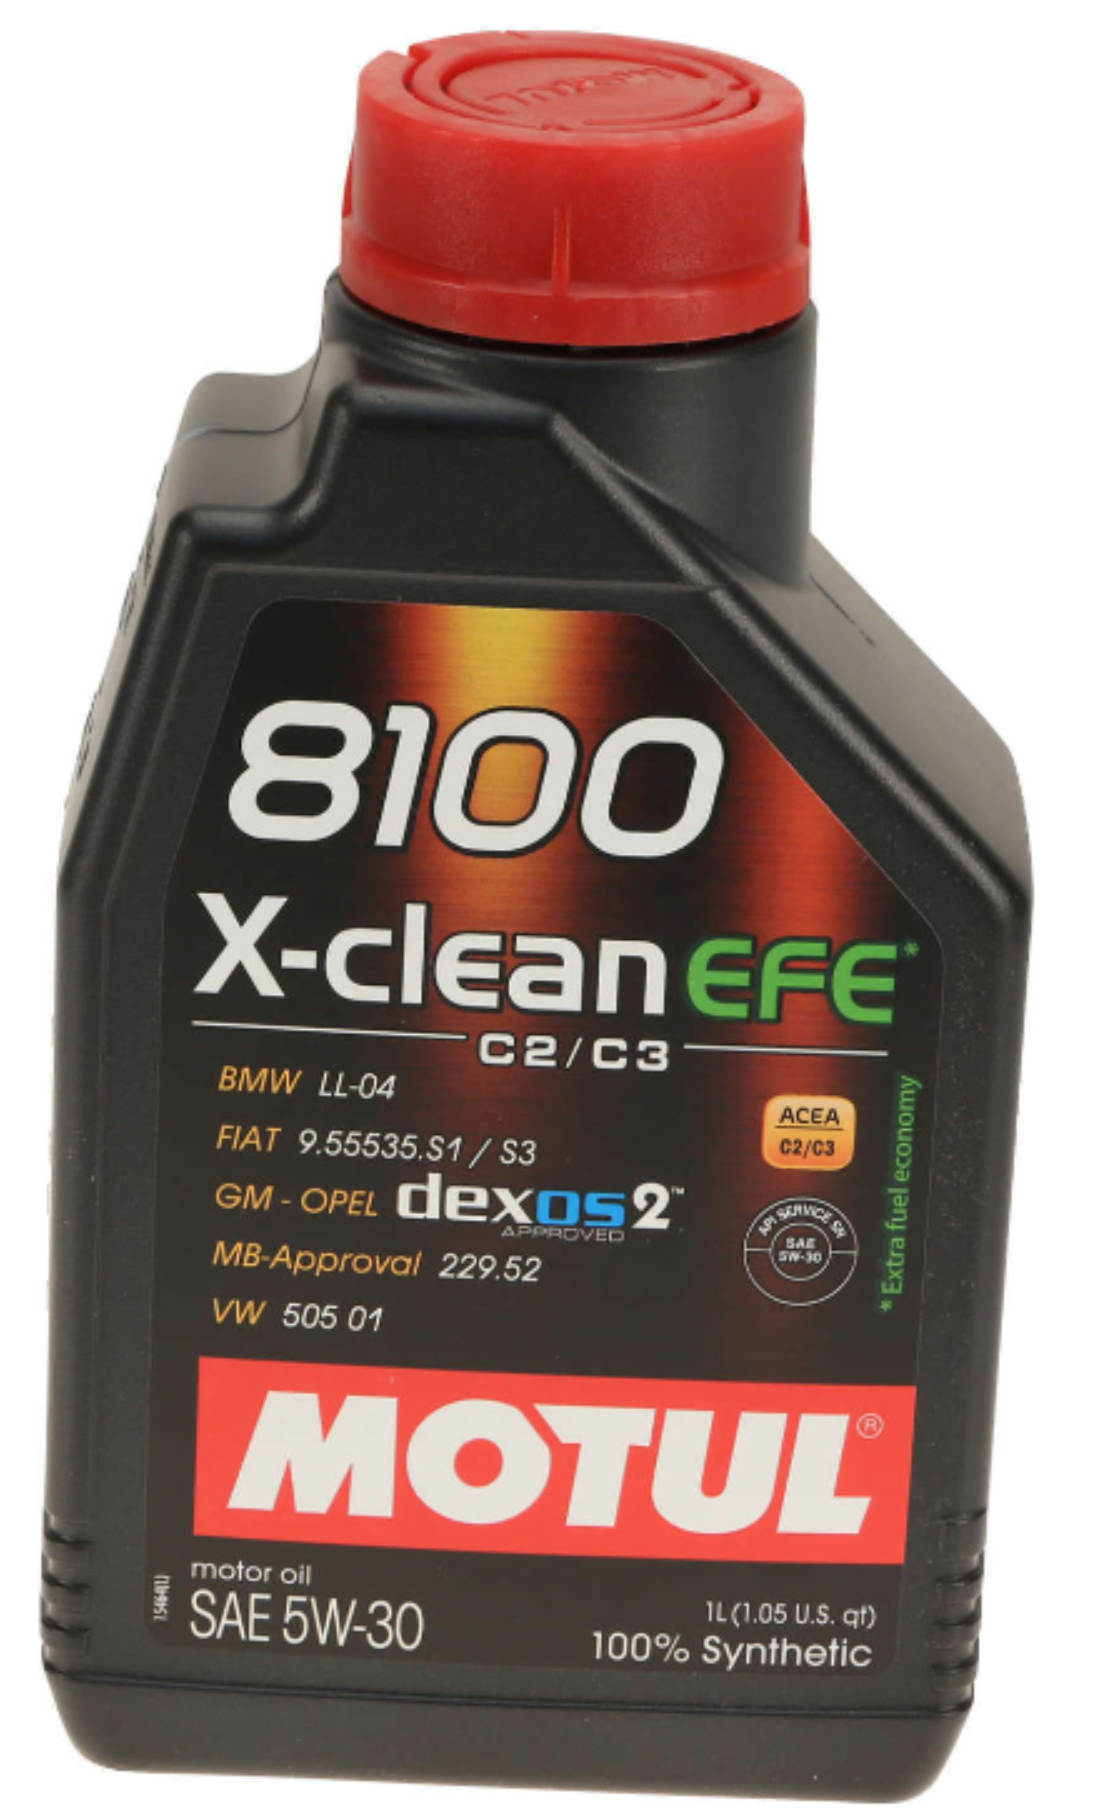 Motul 8100 X-CLEAN EFE Synthetic 5W-30 Motor Oil, 1 Liter